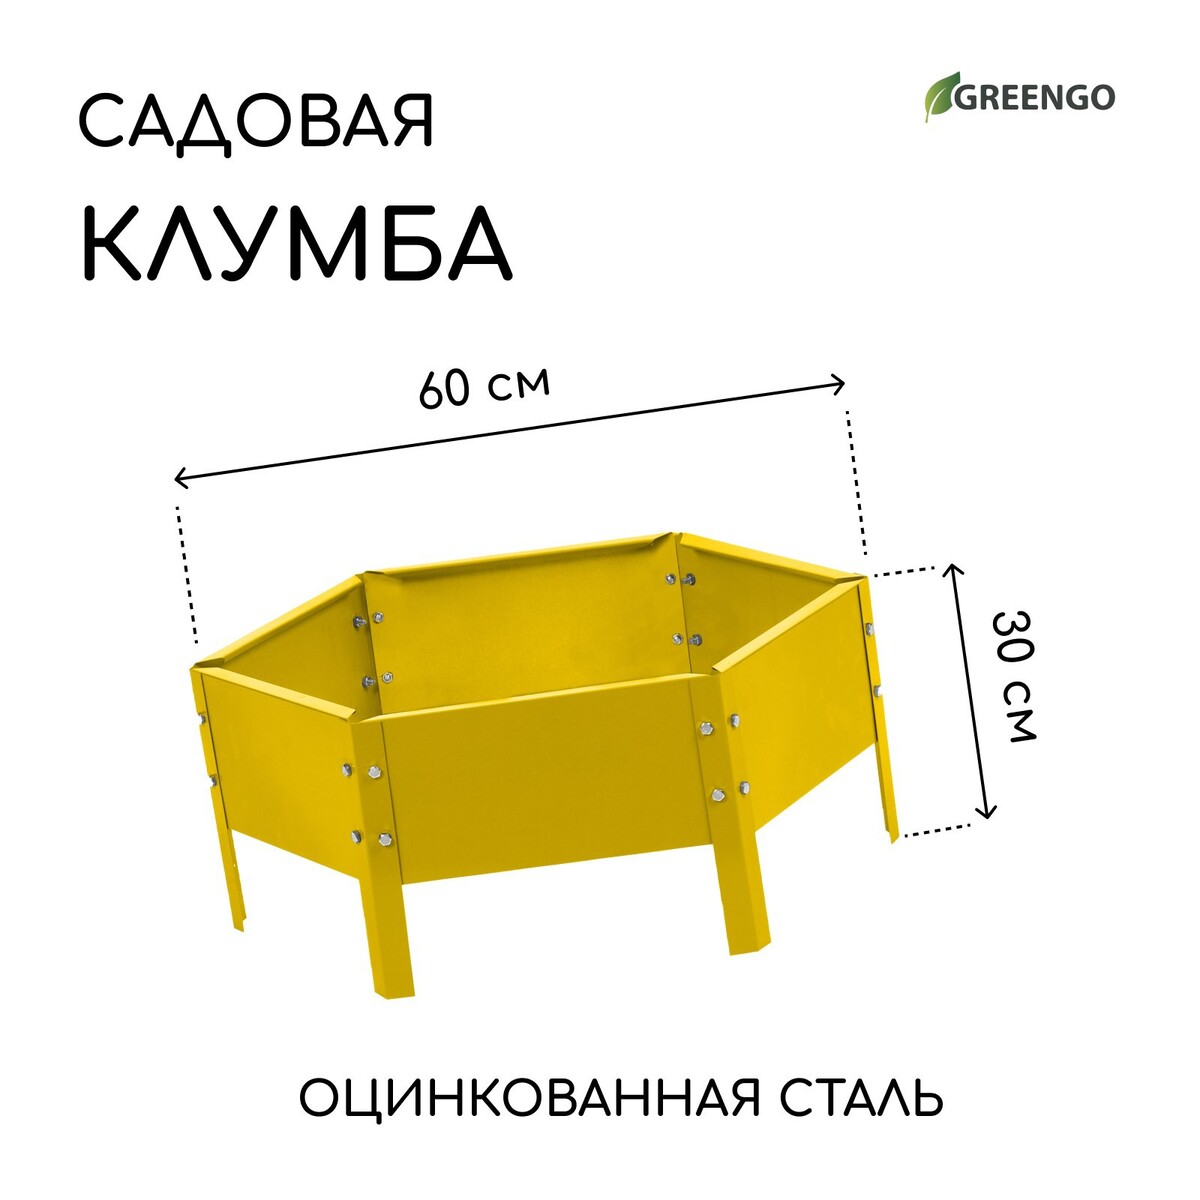 Клумба оцинкованная, d = 60 см, h = 15 см, желтая, greengo клумба оцинкованная 50 × 50 × 15 см оранжевая